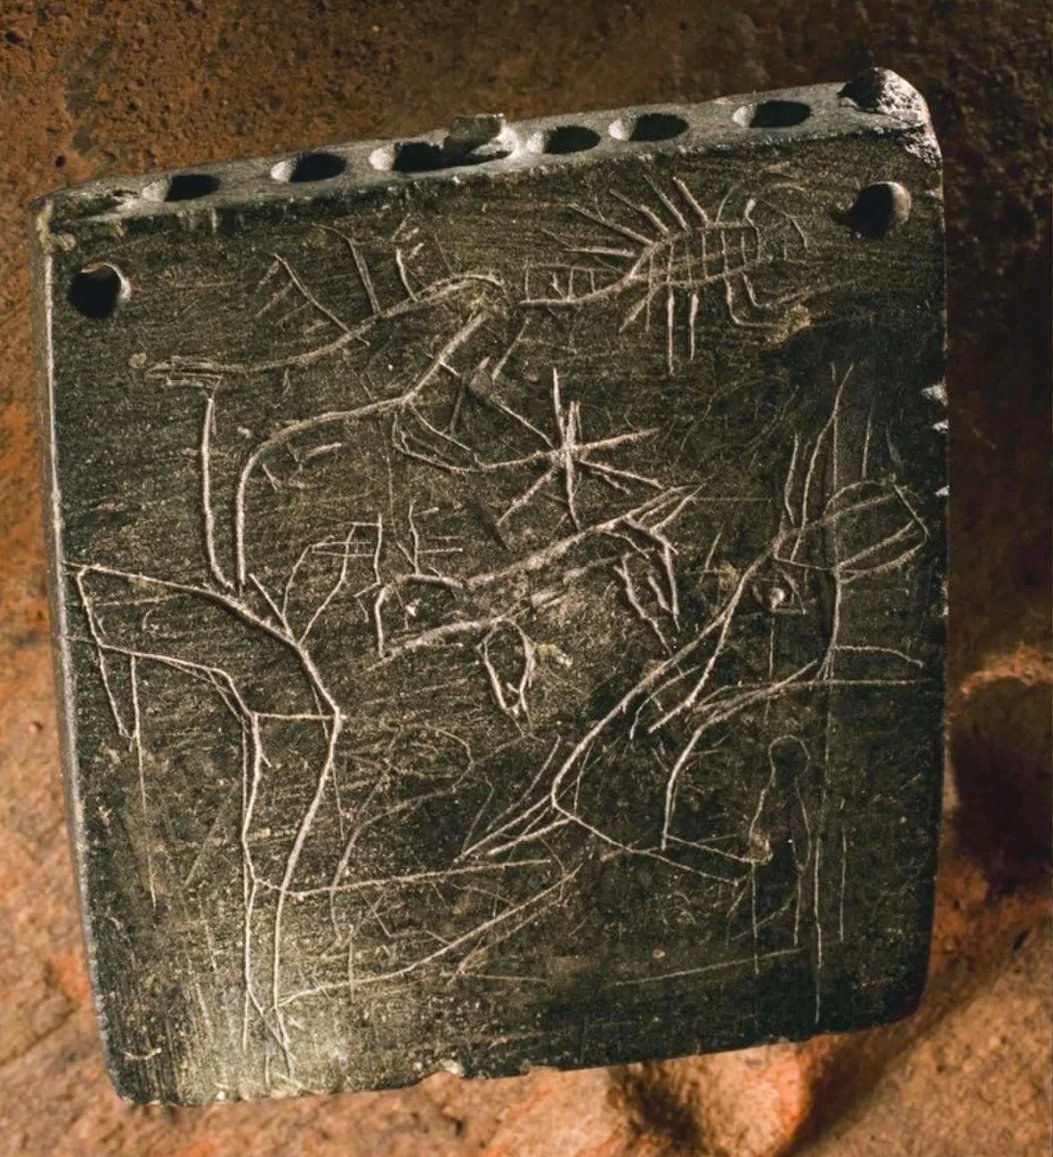 古代咒語的正面和背面都有蝎子等動物的插圖（如圖所示）。 對咒語文字的分析表明，它是在公元前 850 年至公元前 800 年之間的某個時間被銘刻的，這使得銘文成為迄今為止發現的最古老的亞拉姆語咒語。 © Roberto Ceccacci 攝/芝加哥-圖賓根 Zincirli 遠征隊提供